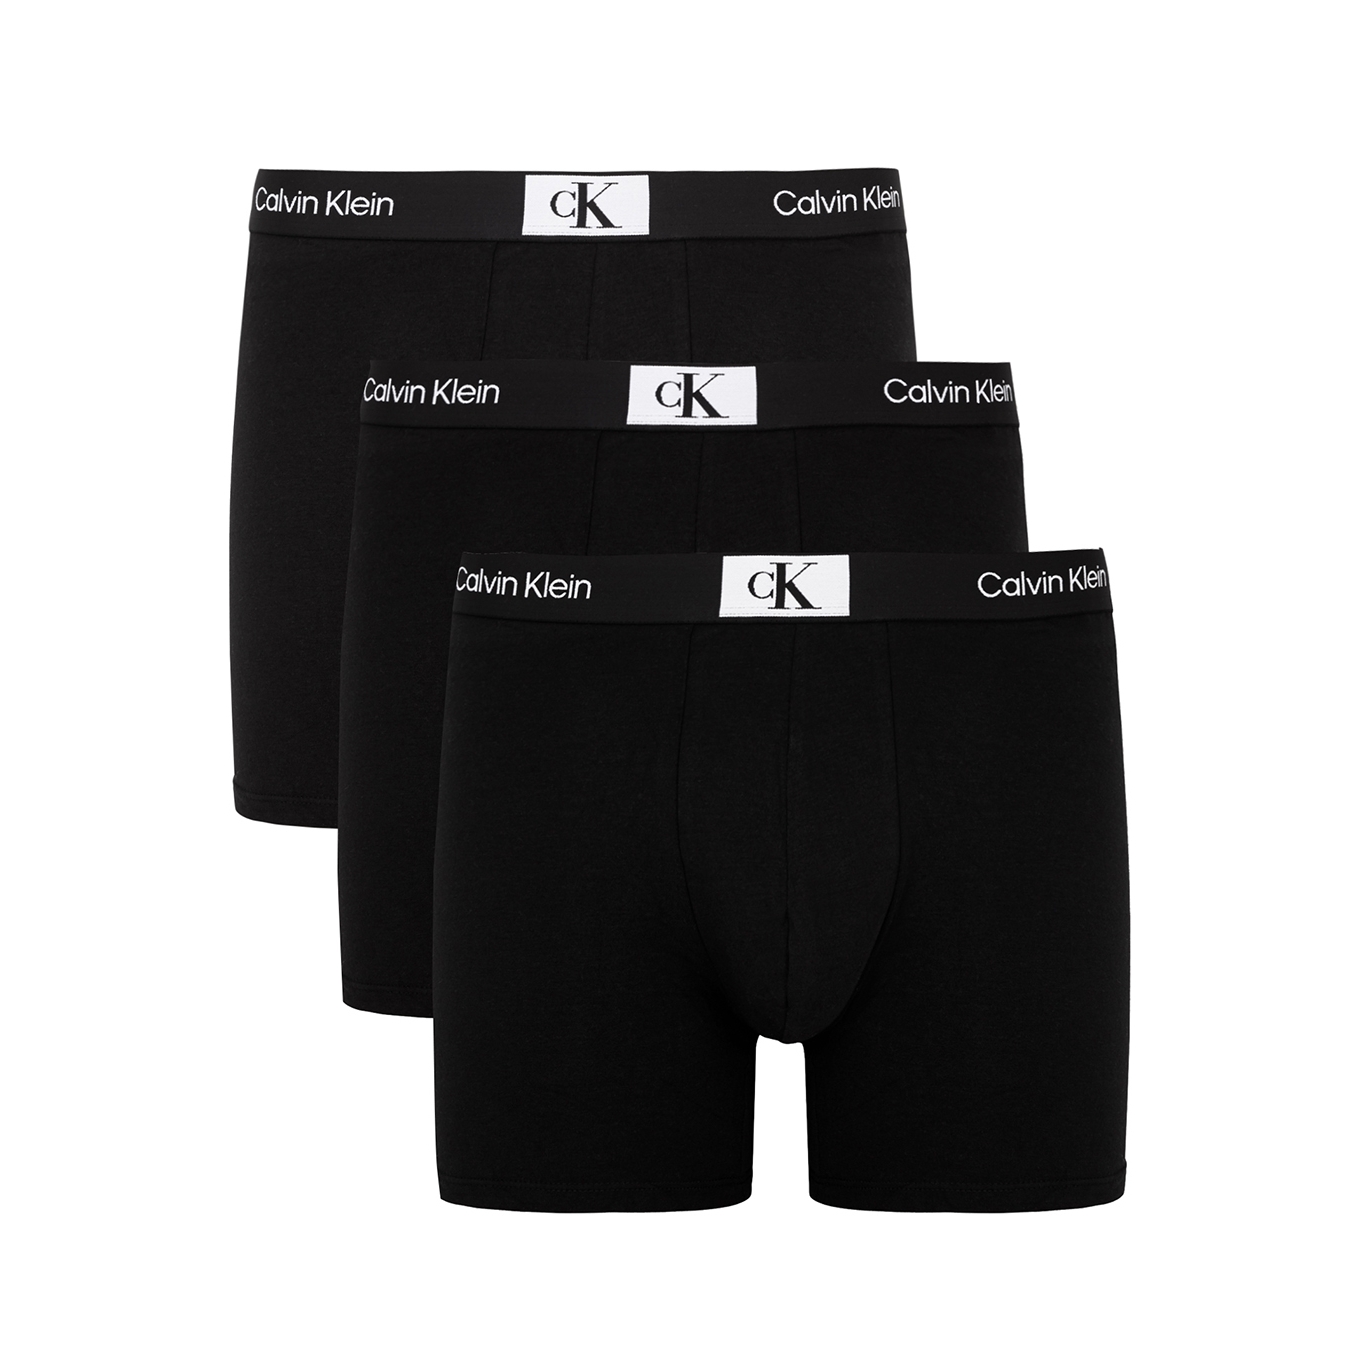 Calvin Klein 1996 stretch-cotton boxer briefs - set of three - Harvey  Nichols